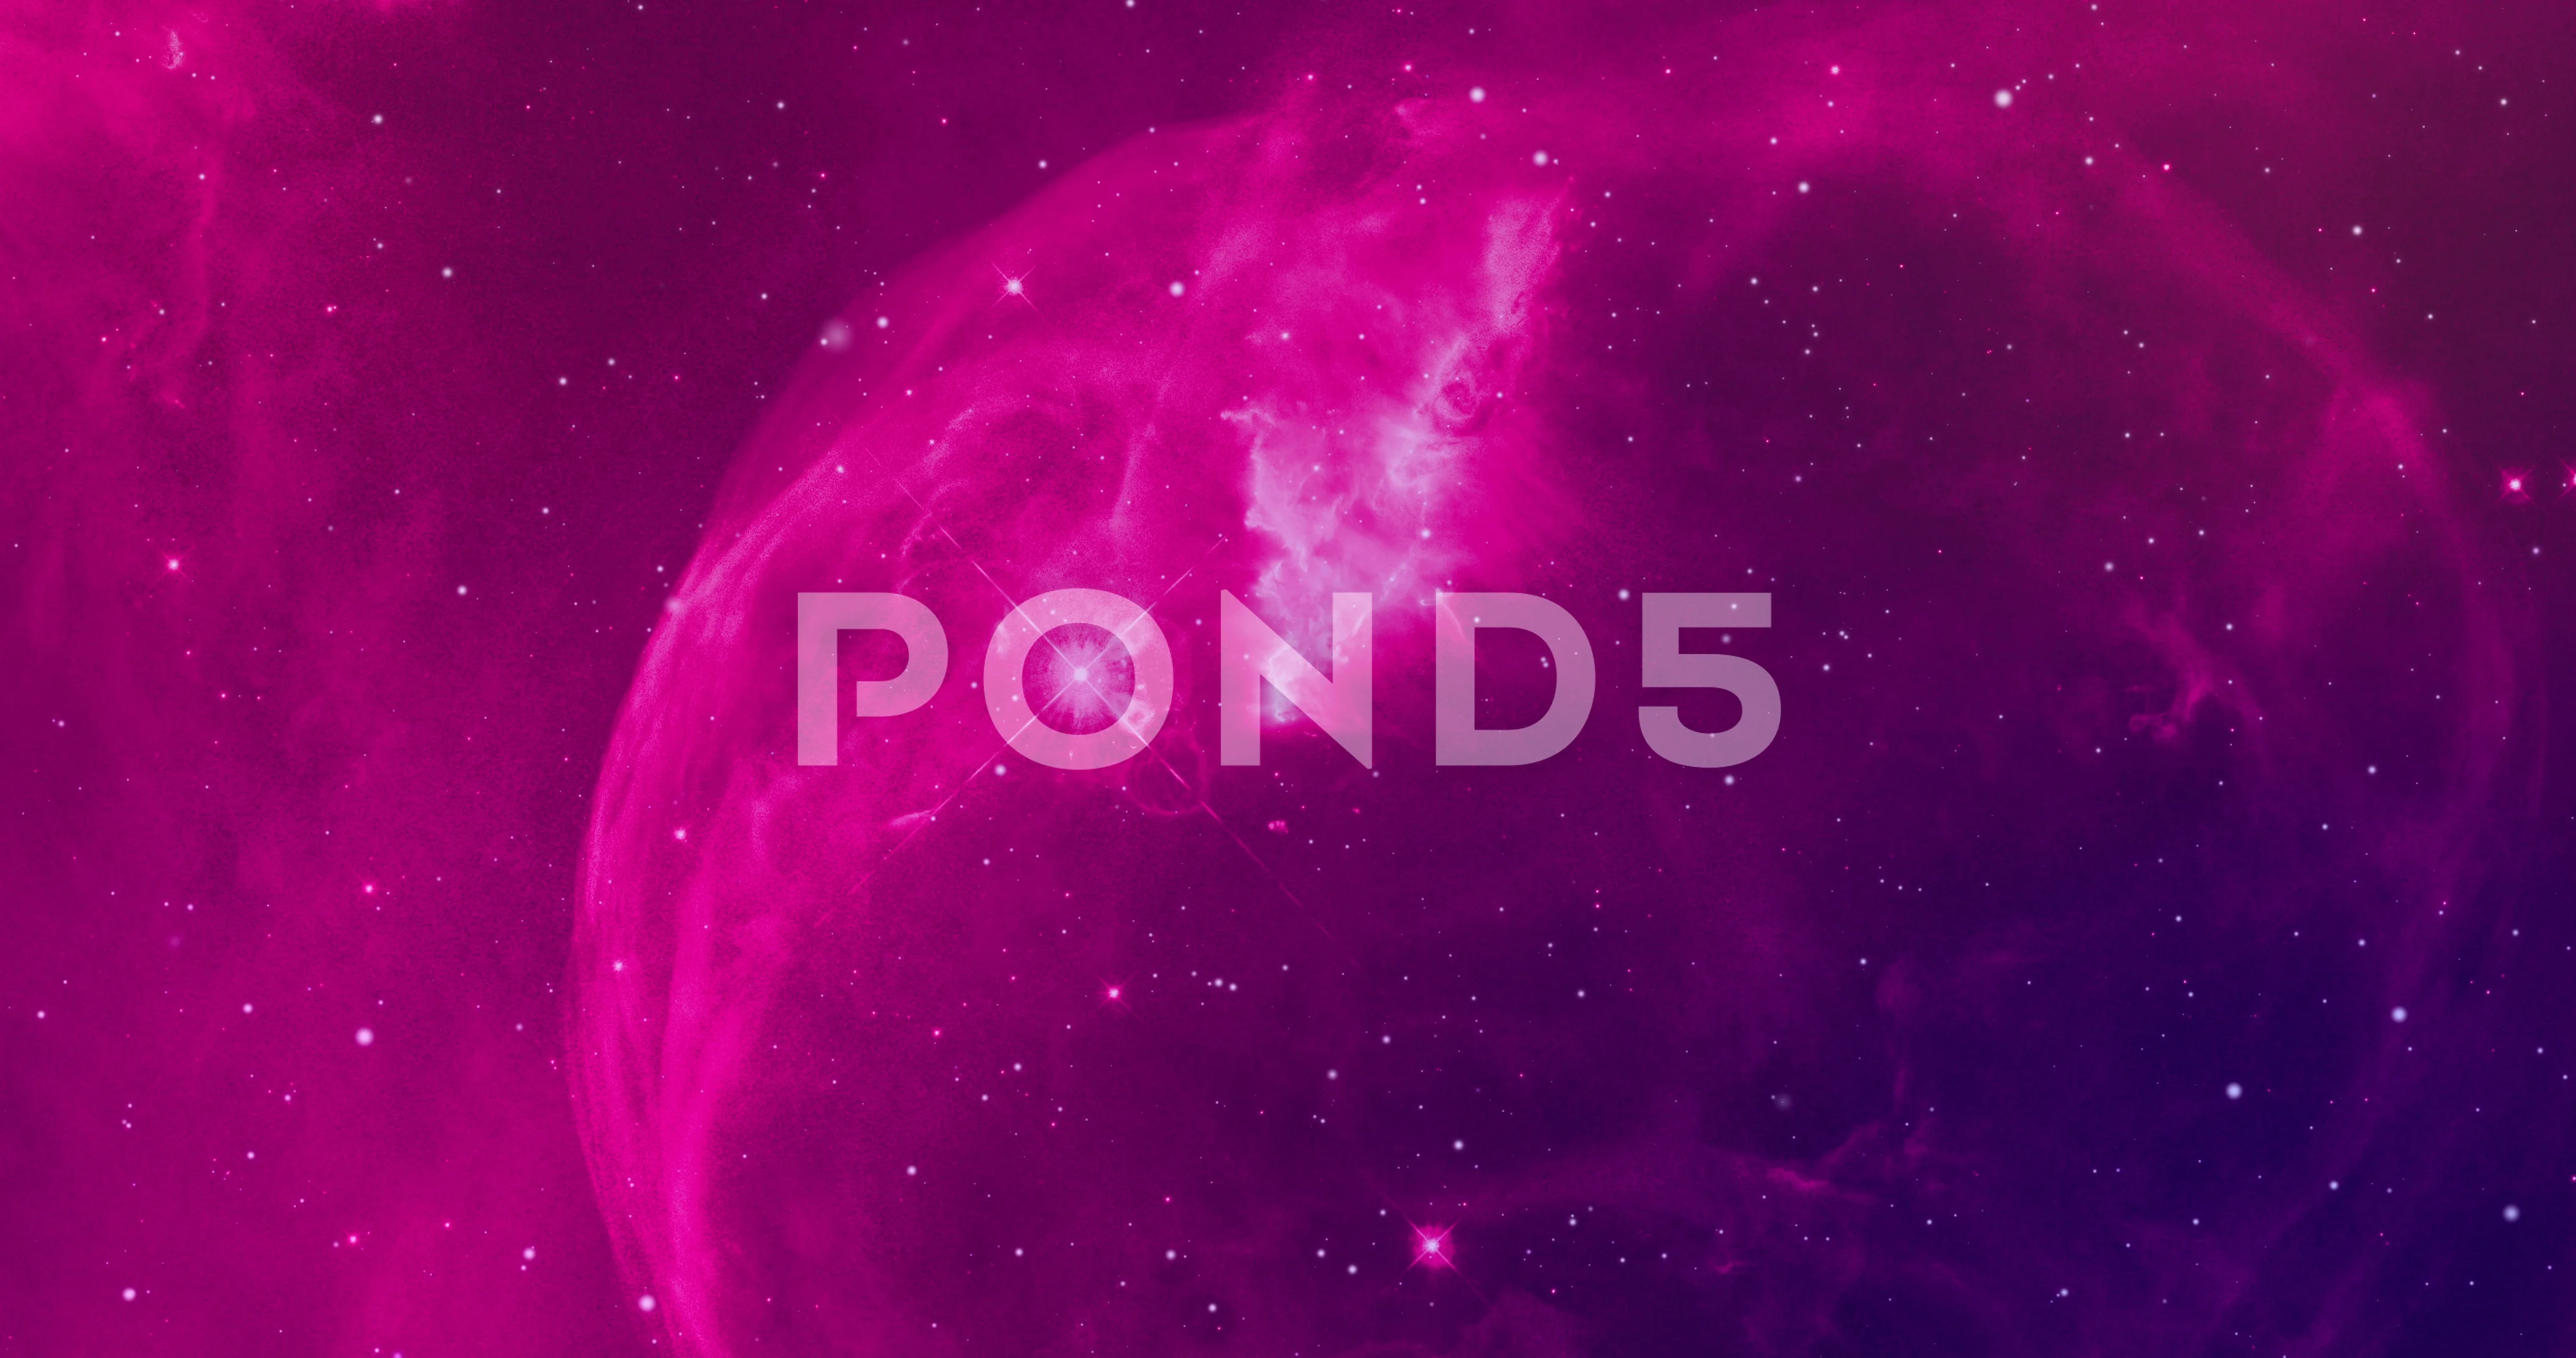 4K Galaxy Background - (Pink) Orion Nebu... | Stock Video | Pond5